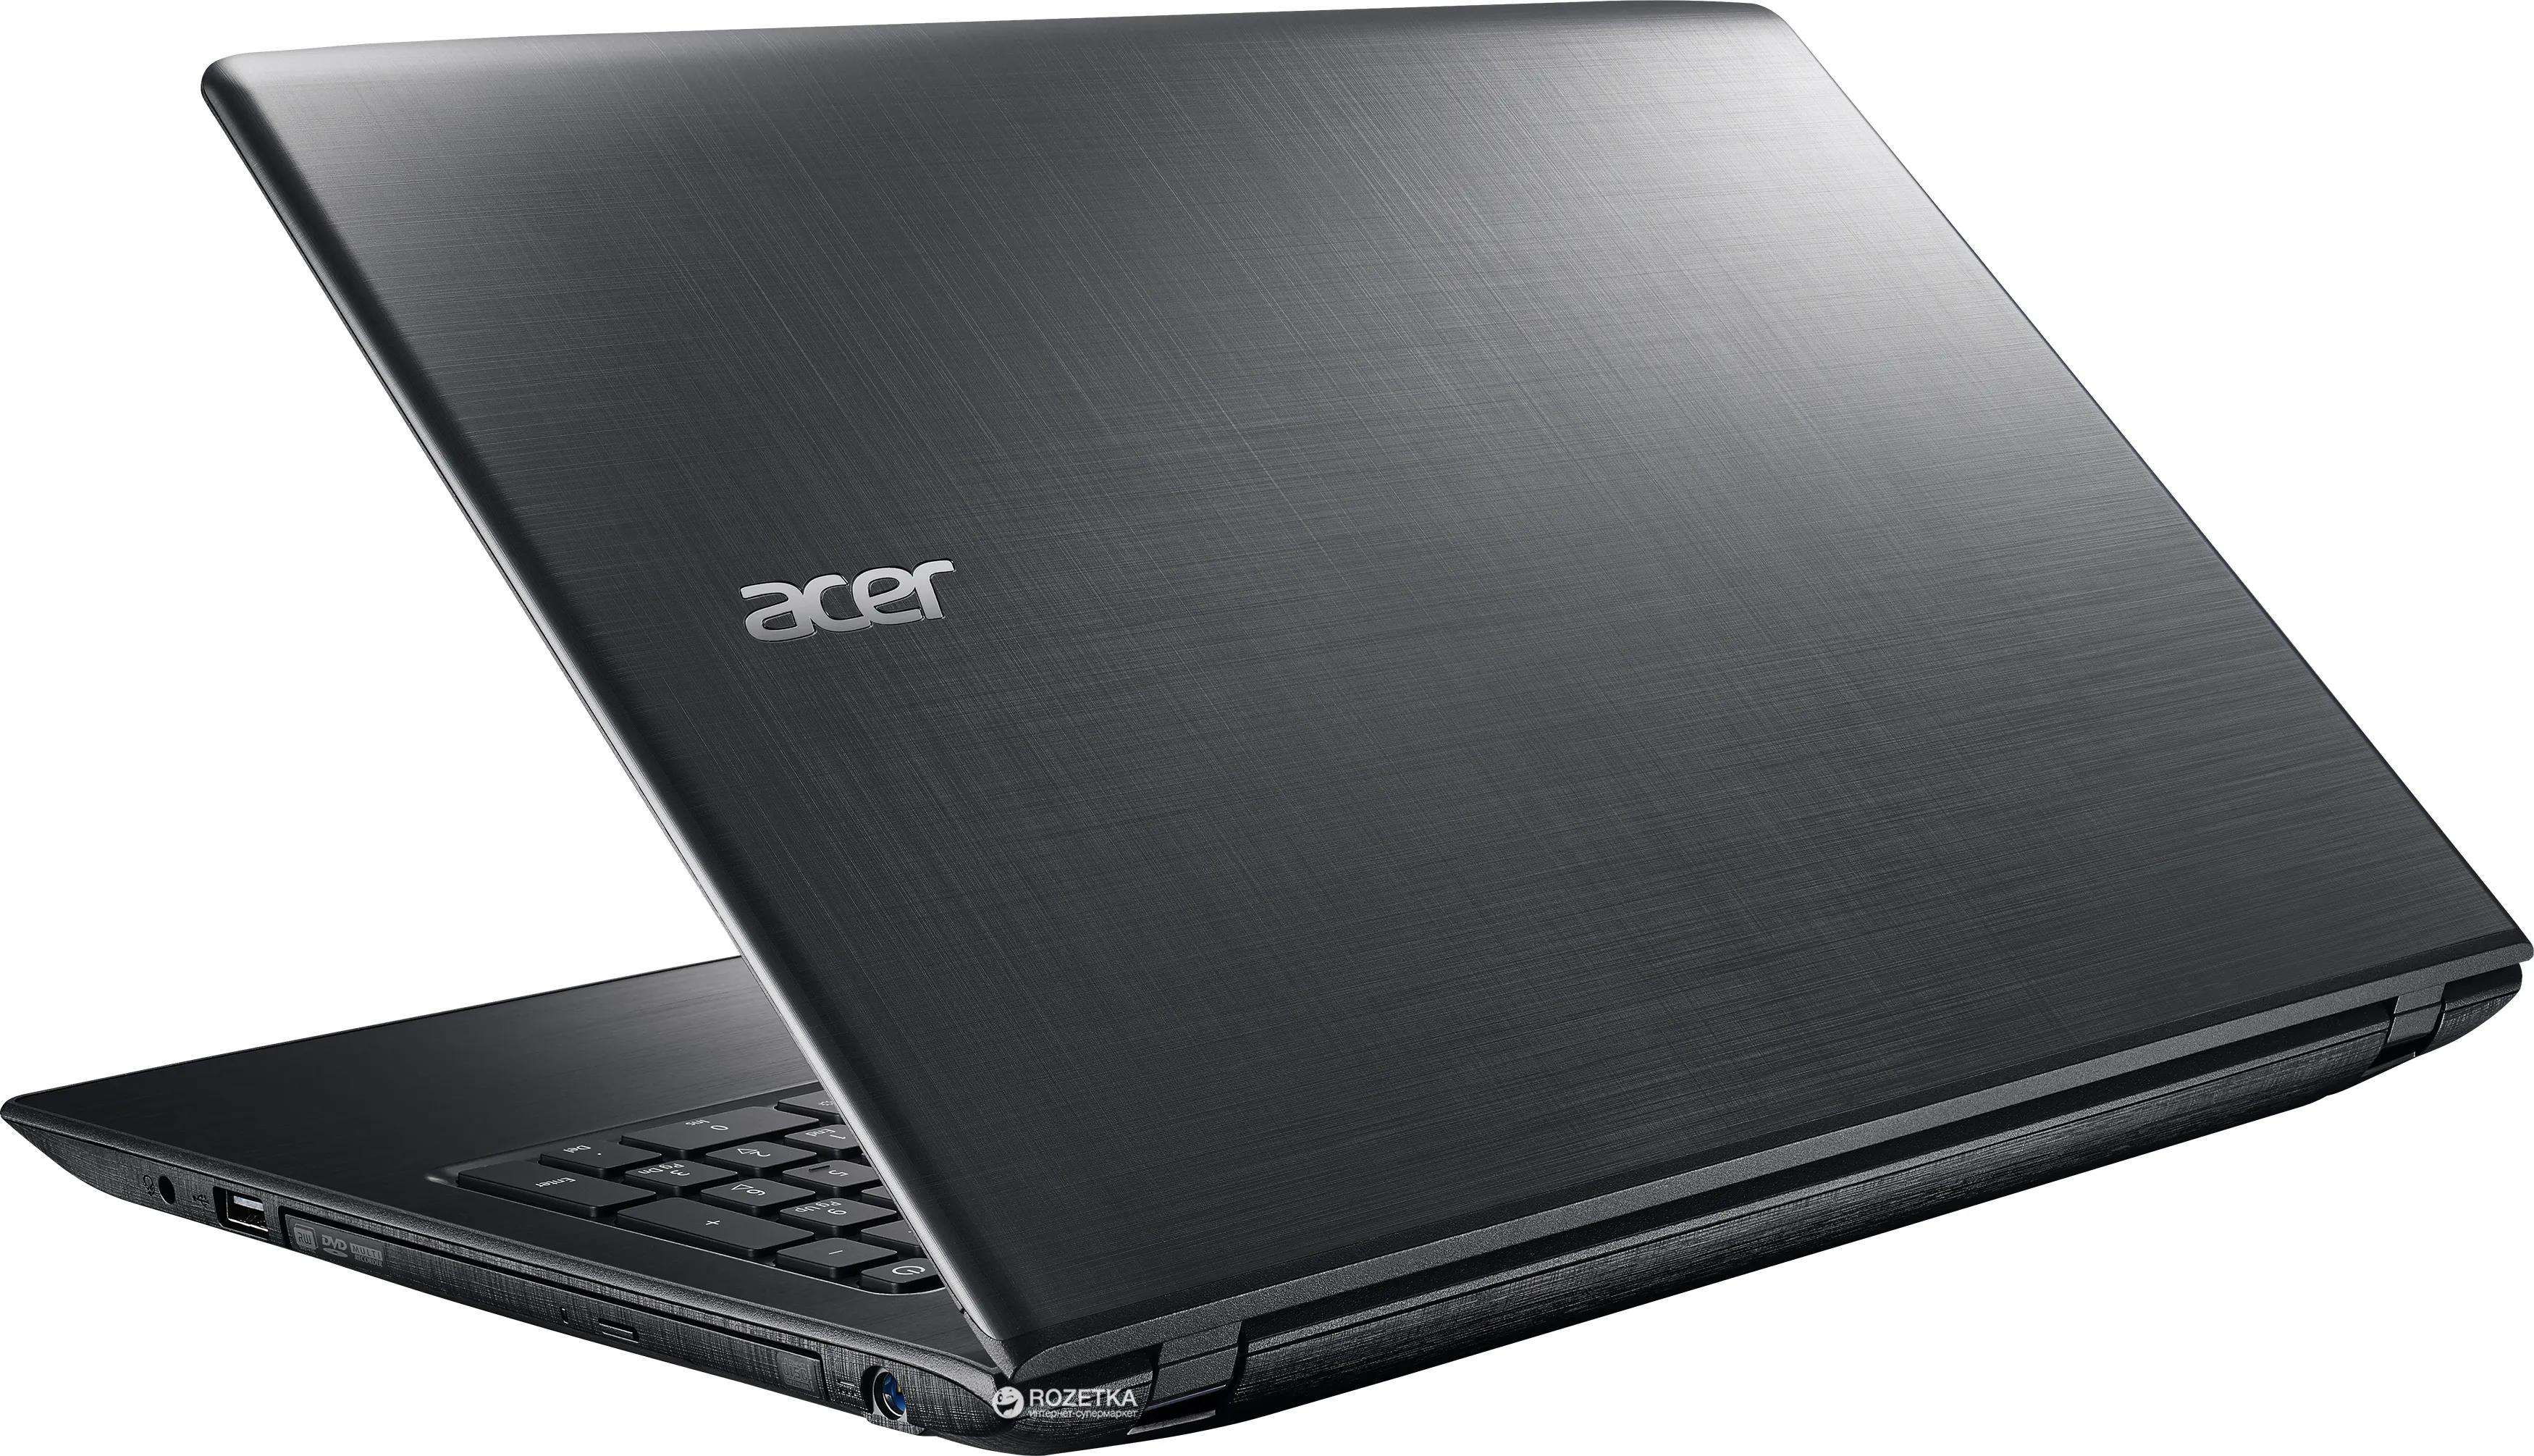 Noutbuk Acer ES15 / Celeron 3060/ DDR3 2 GB/ 500GB HDD /15.6" HD LED/ UMA/ DVD / RUS#2